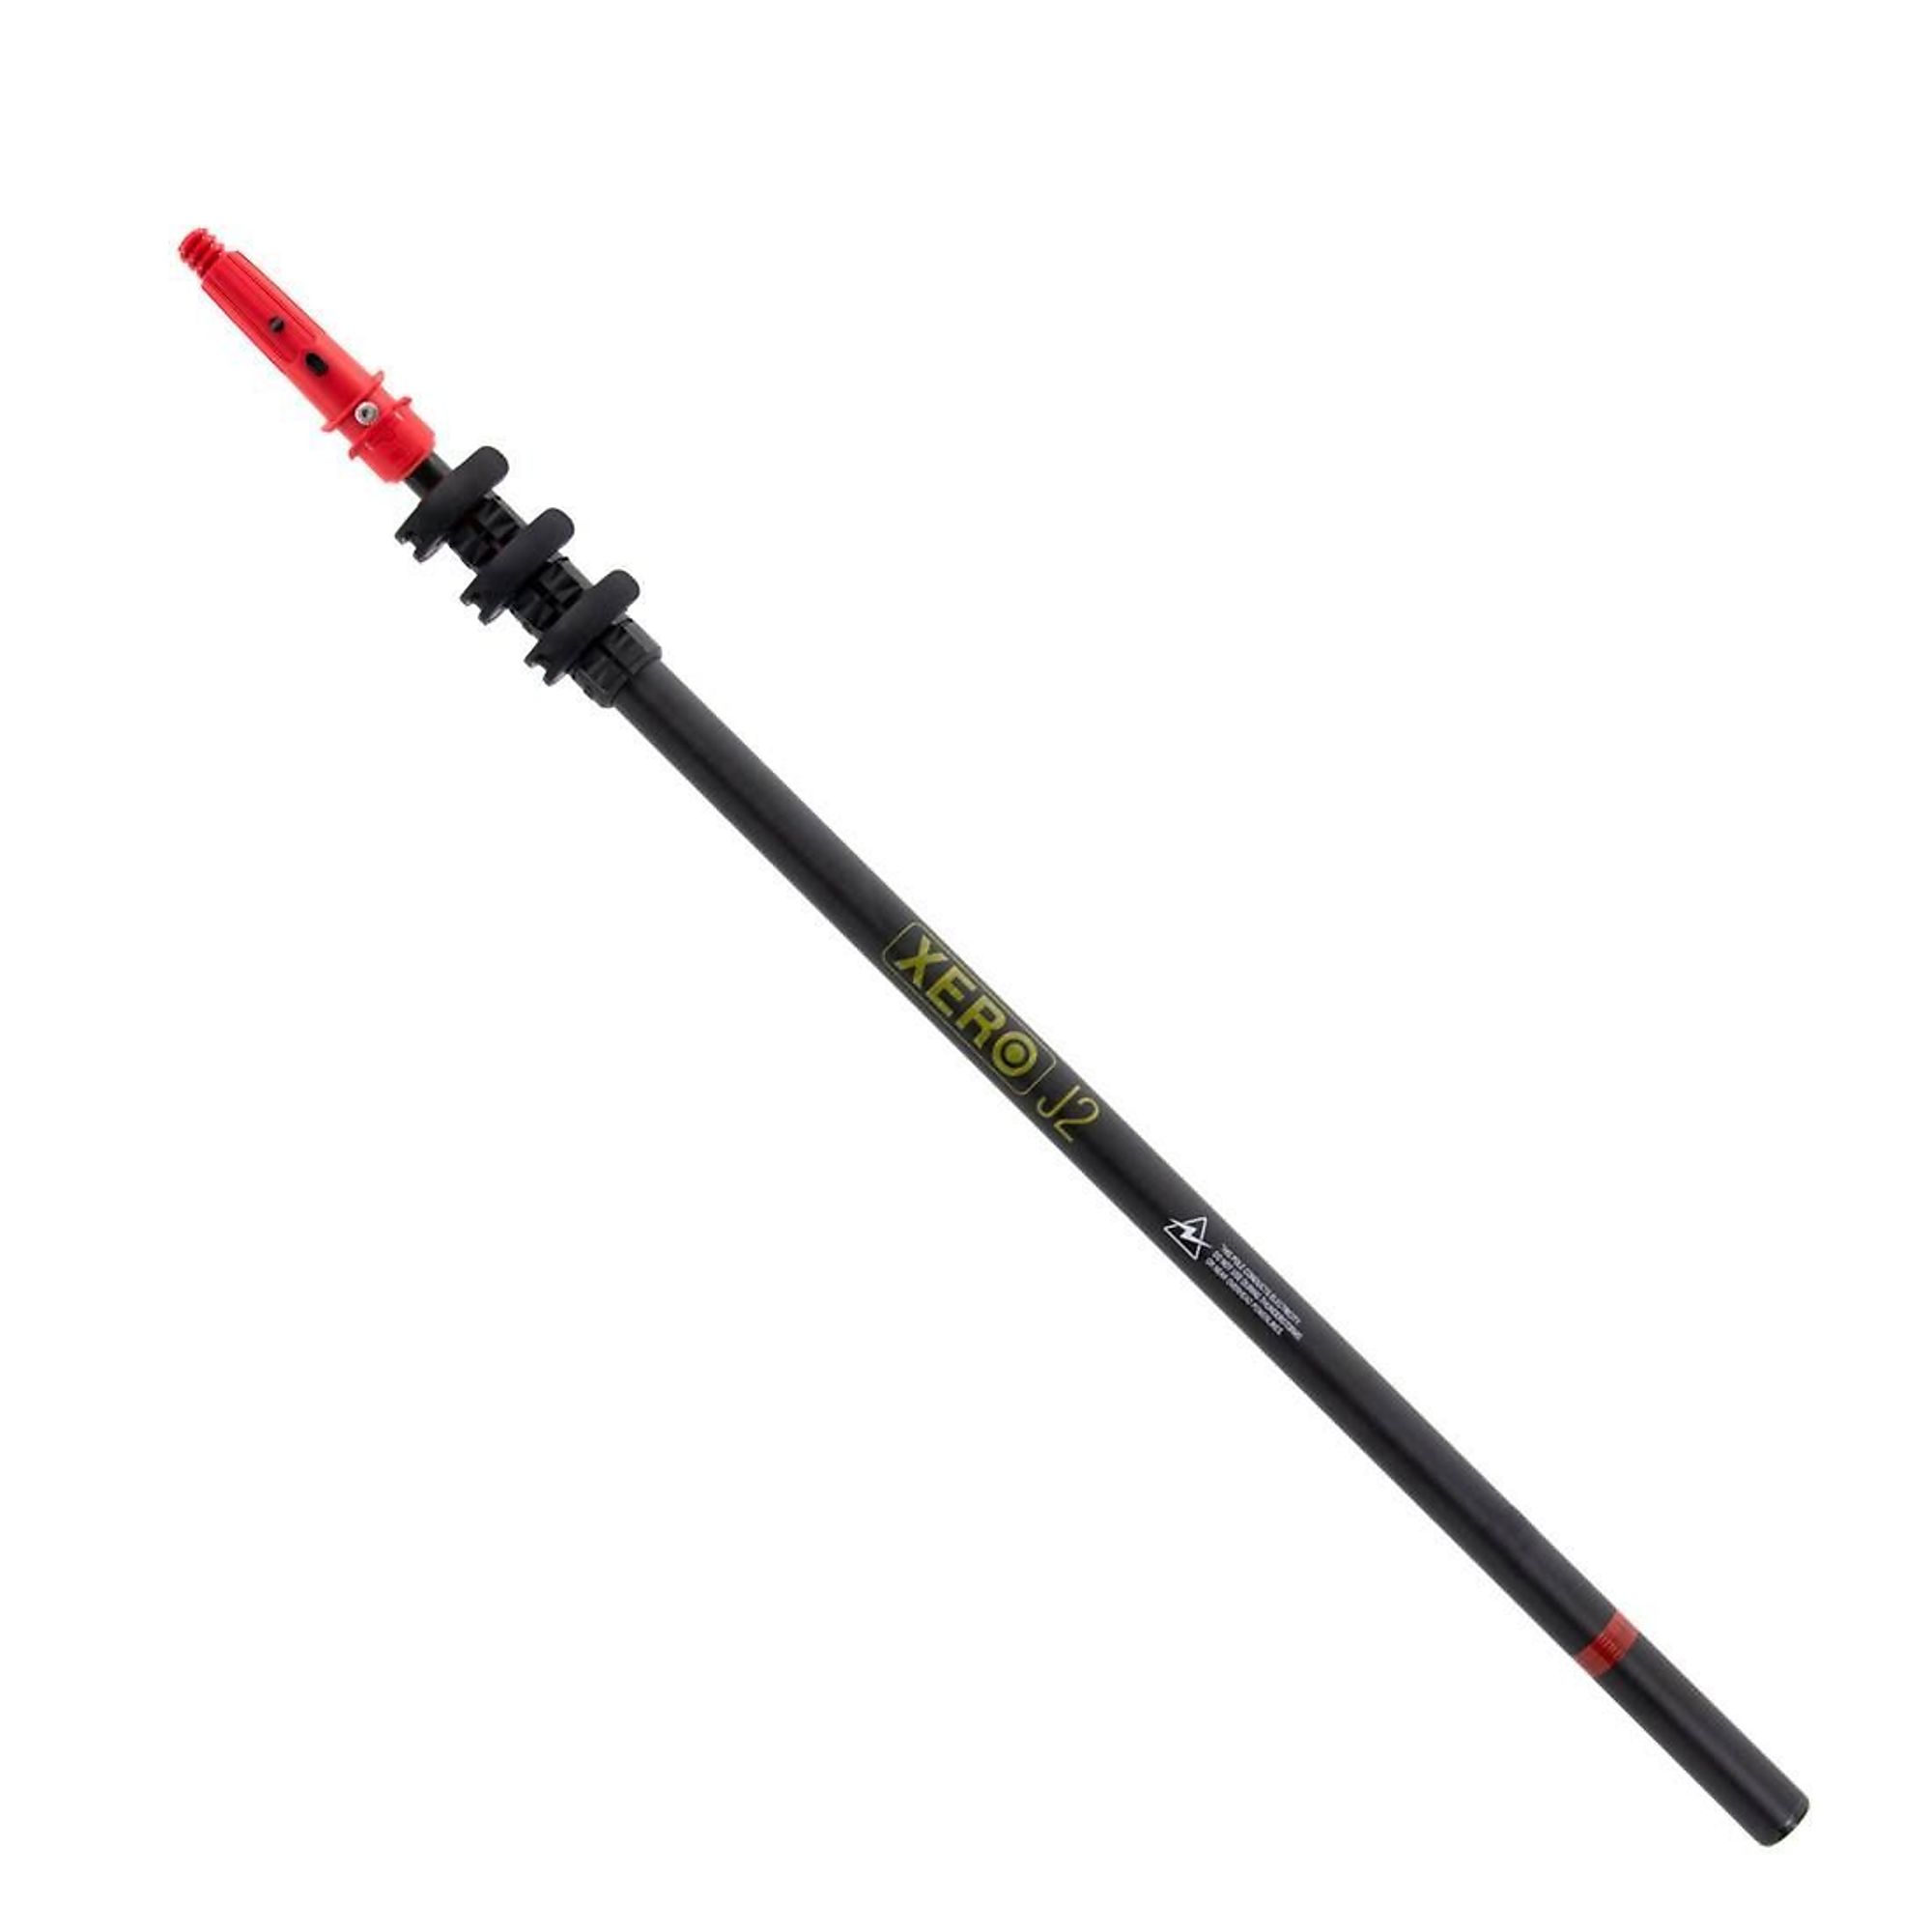 XERO, J2 Pole - Unger Tip, Model 209-10-18